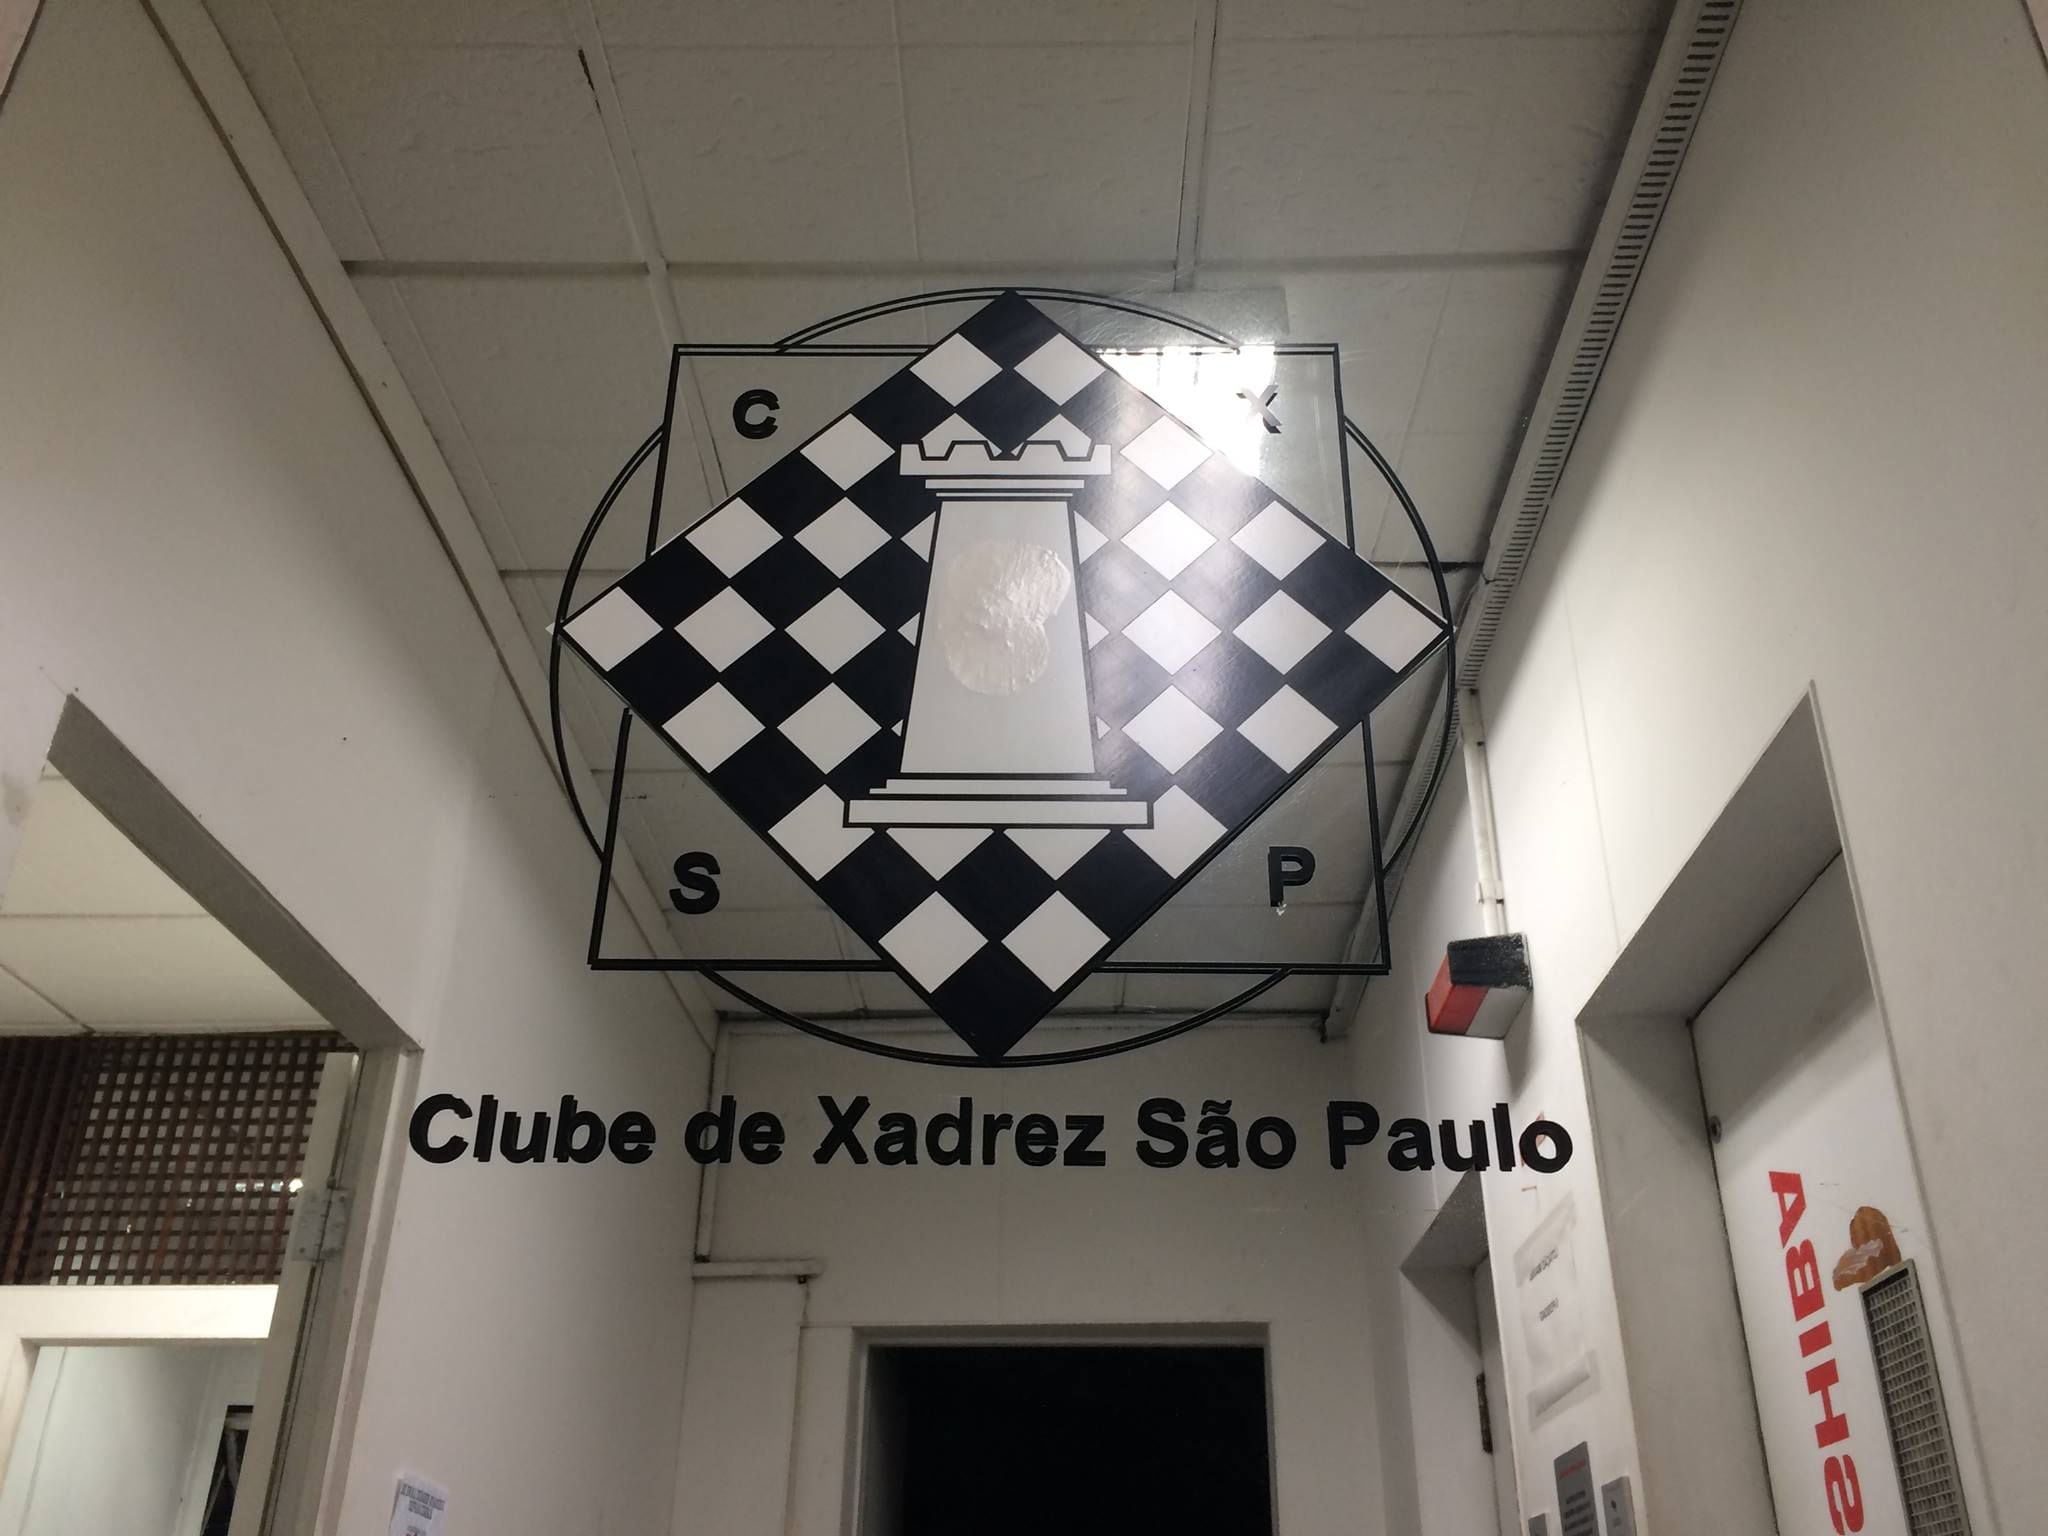 Conheça o Clube de Xadrez São Paulo, o mais antigo do País e local para  aprender sobre o jogo - Estadão